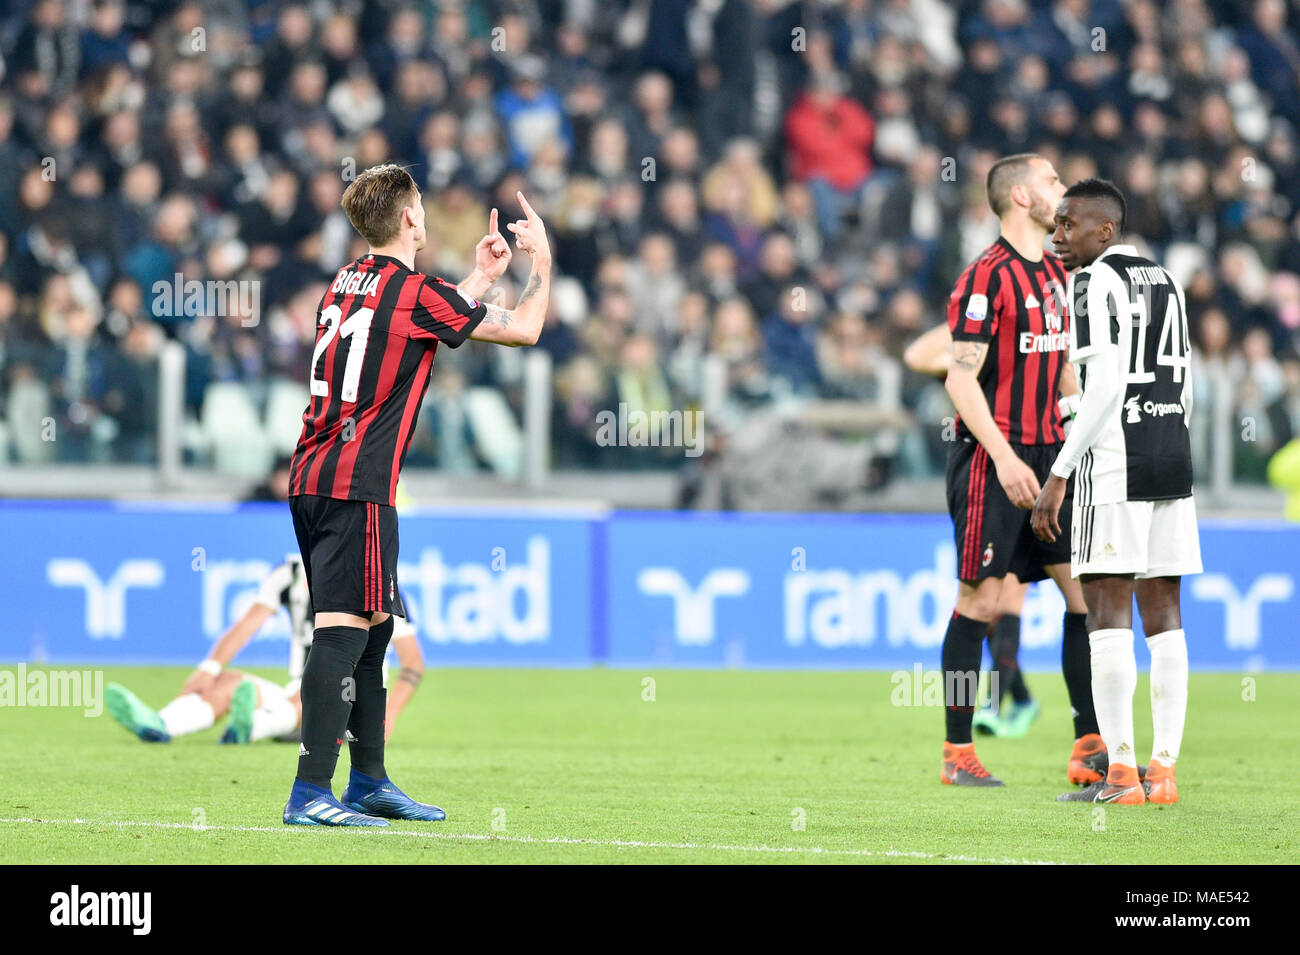 Lucas Biglia (Milan), Blaise Matudi (Juventus FC), durante la serie di una  partita di calcio tra Juventus FC vs AC Milano presso lo stadio Allianz il 31  marzo 2018 a Torino, Italia.